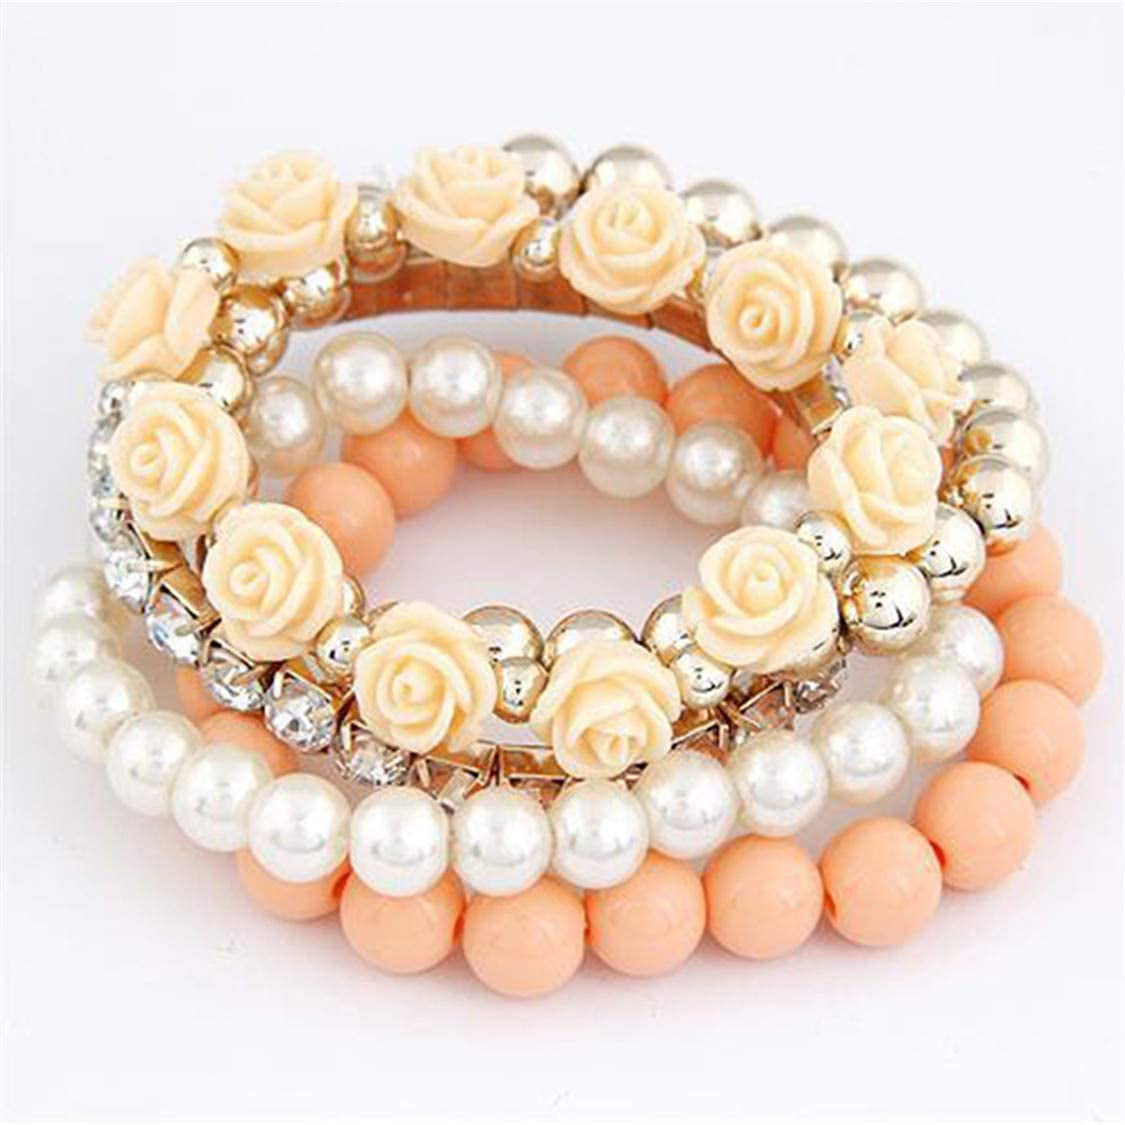 Imitation Pearl Beads Heart Flower Crystal Letter D Charm Bangle Bracelet NEW 